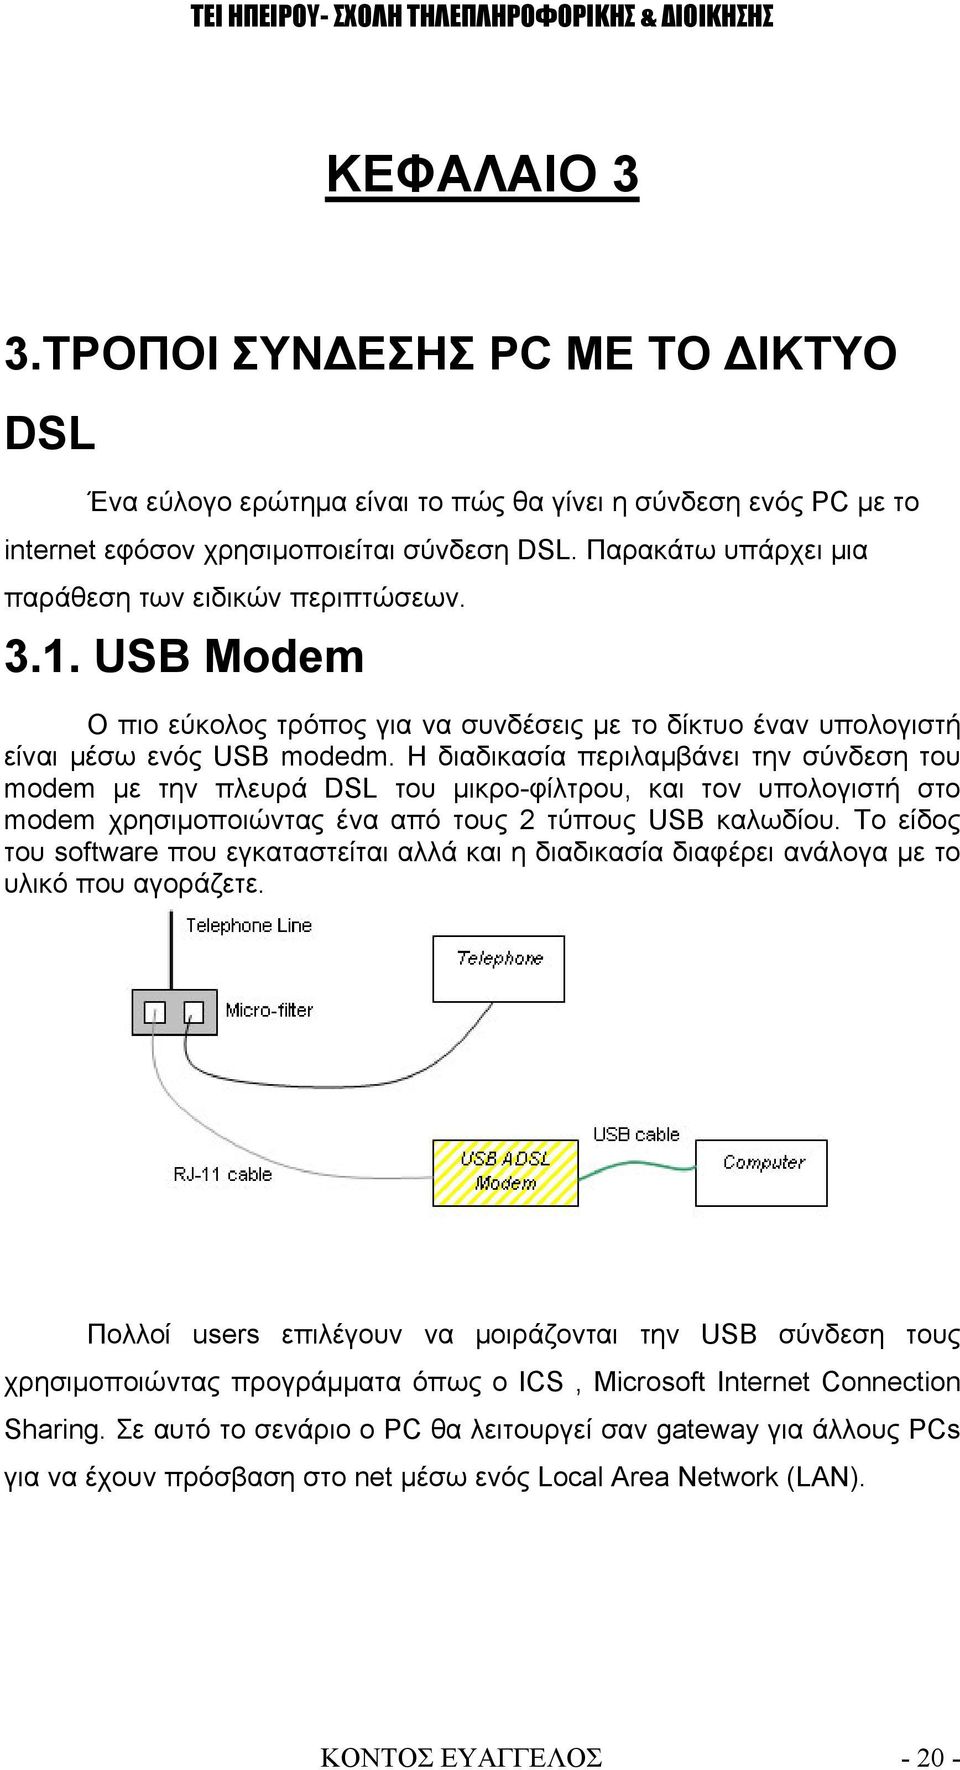 Η διαδικασία περιλαμβάνει την σύνδεση του modem με την πλευρά DSL του μικρο-φίλτρου, και τον υπολογιστή στο modem χρησιμοποιώντας ένα από τους 2 τύπους USB καλωδίου.